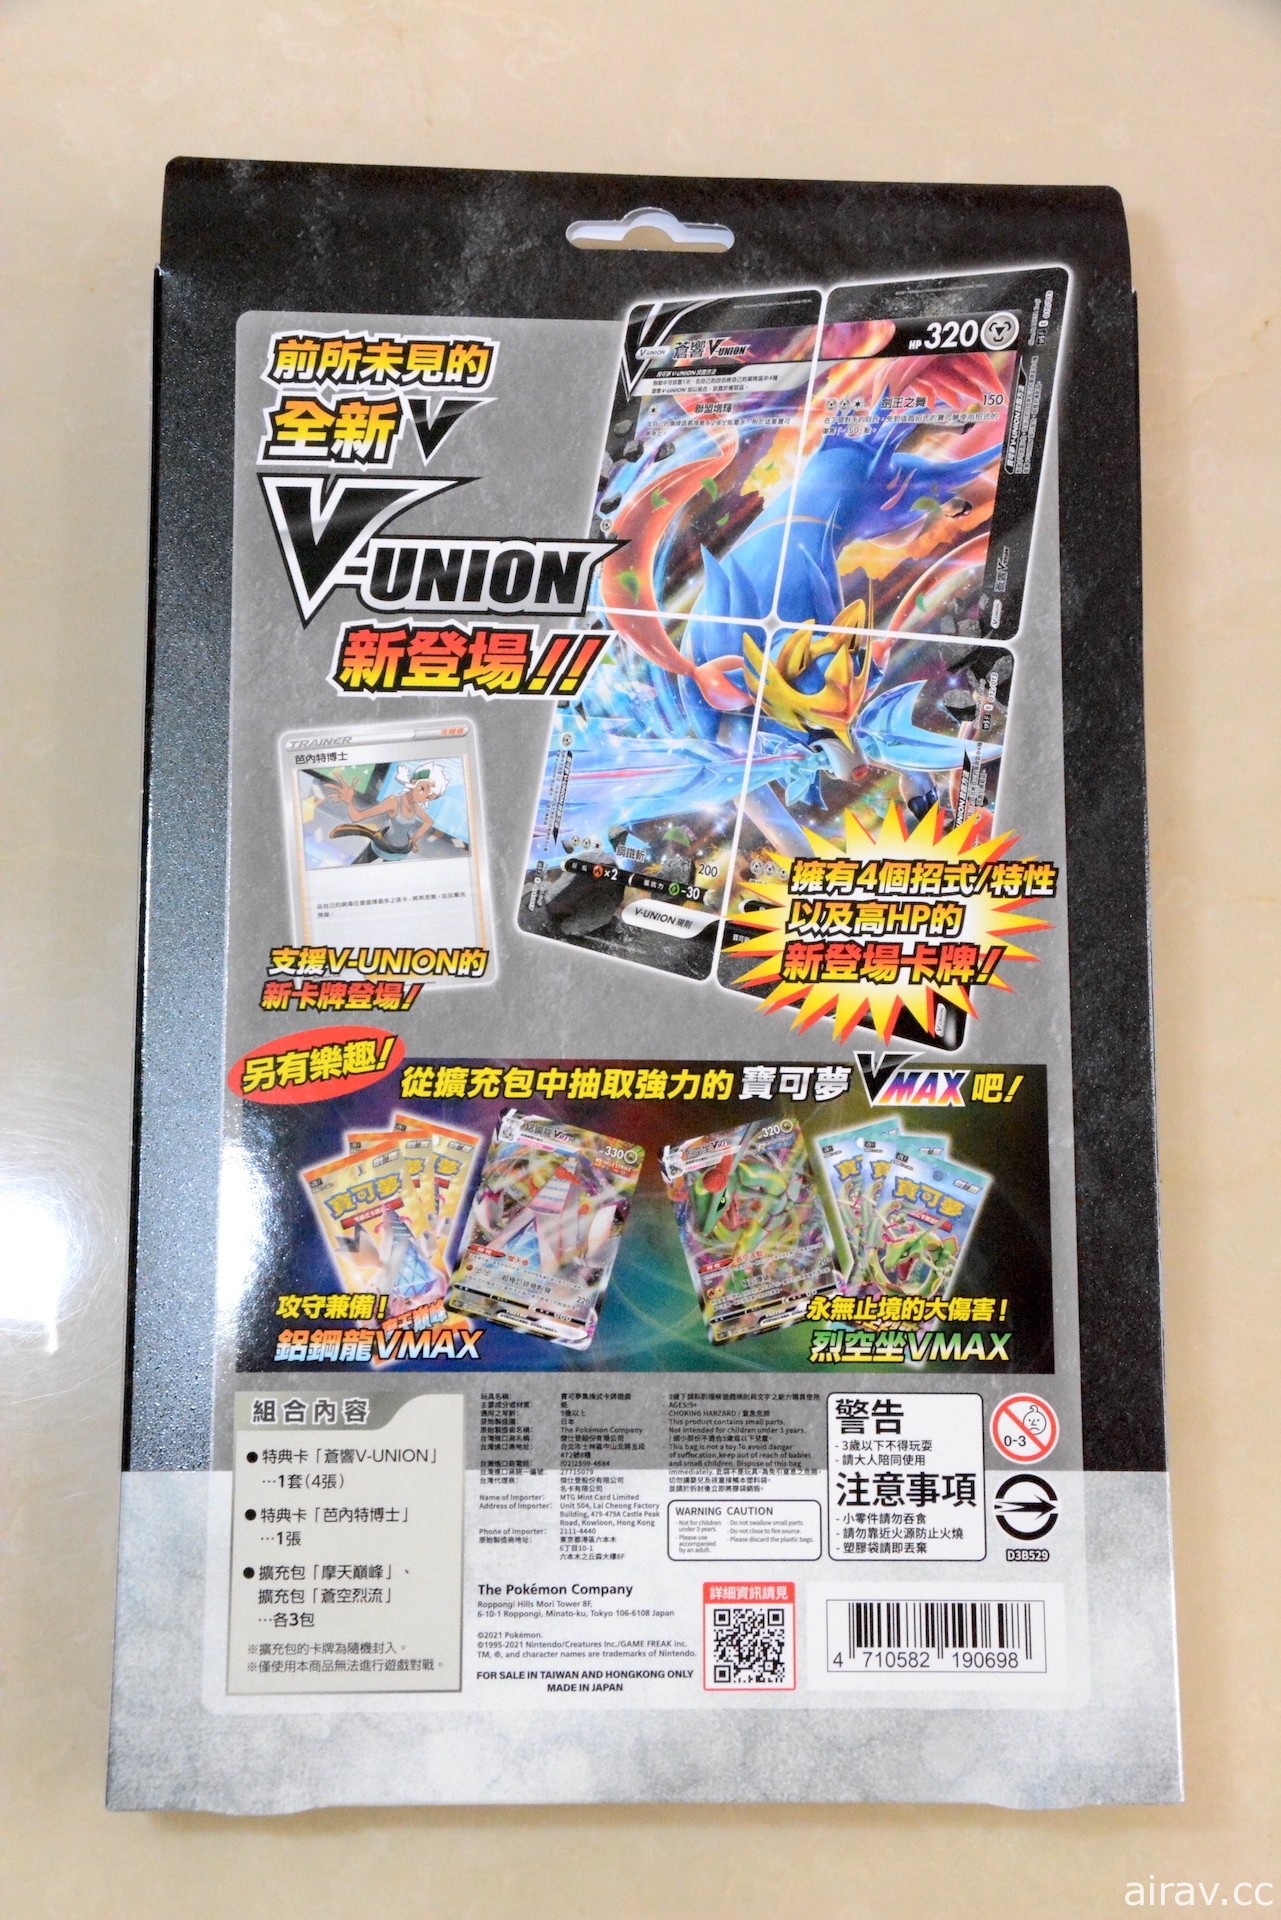 【开箱】PTCG“特别卡组 V-UNION”超梦、甲贺忍蛙、苍响 三种包装内容分享